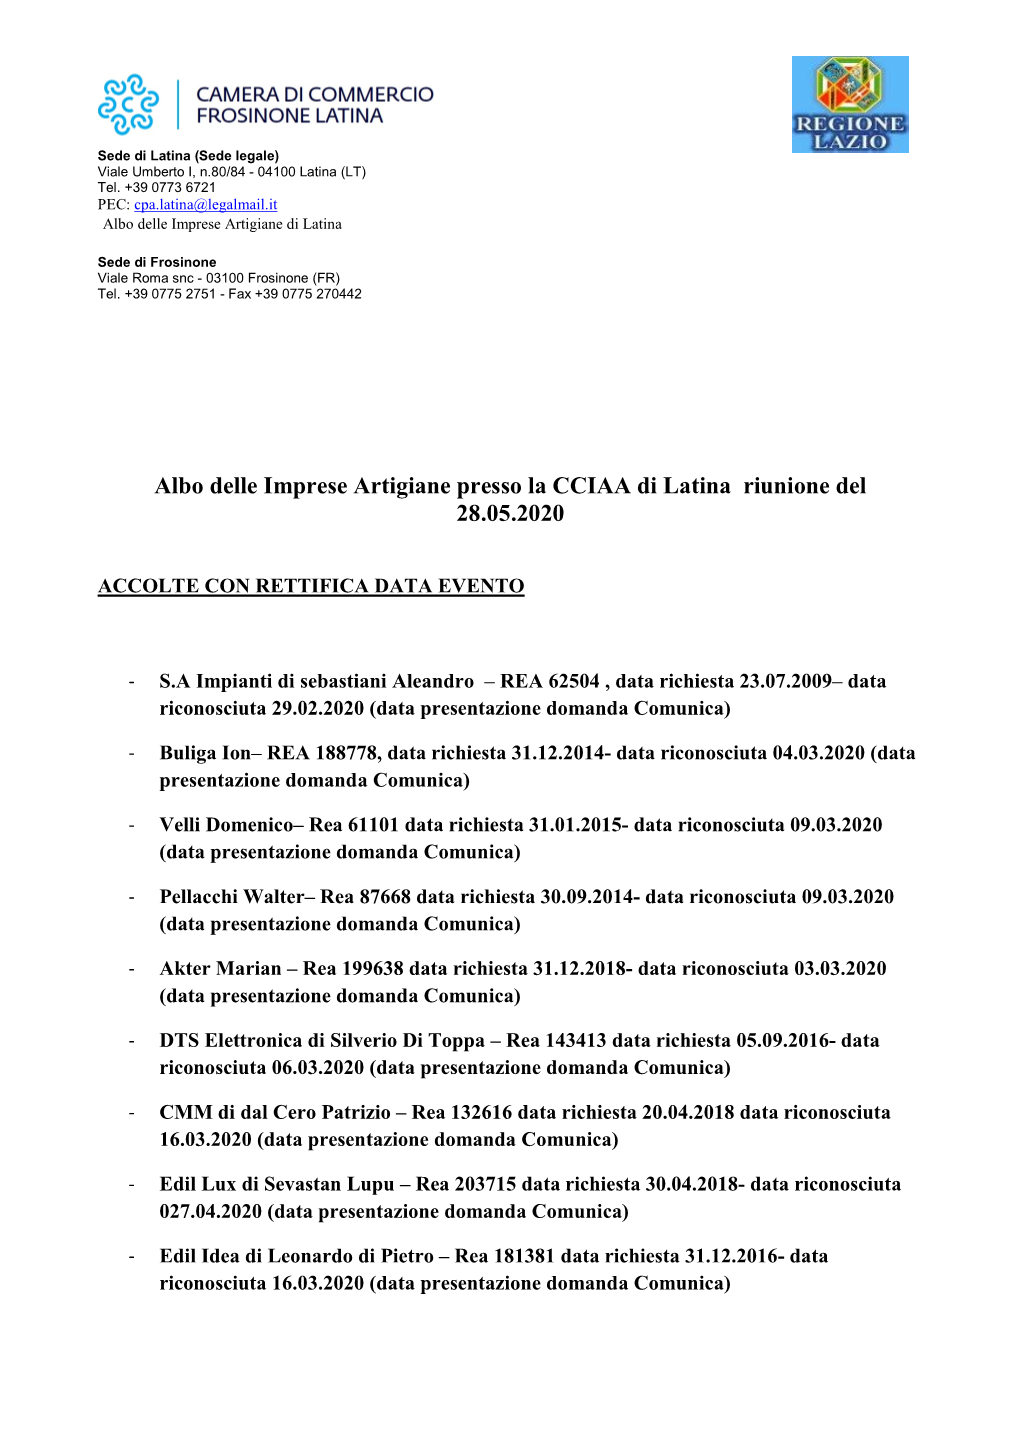 Albo Delle Imprese Artigiane Presso La CCIAA Di Latina Riunione Del 28.05.2020